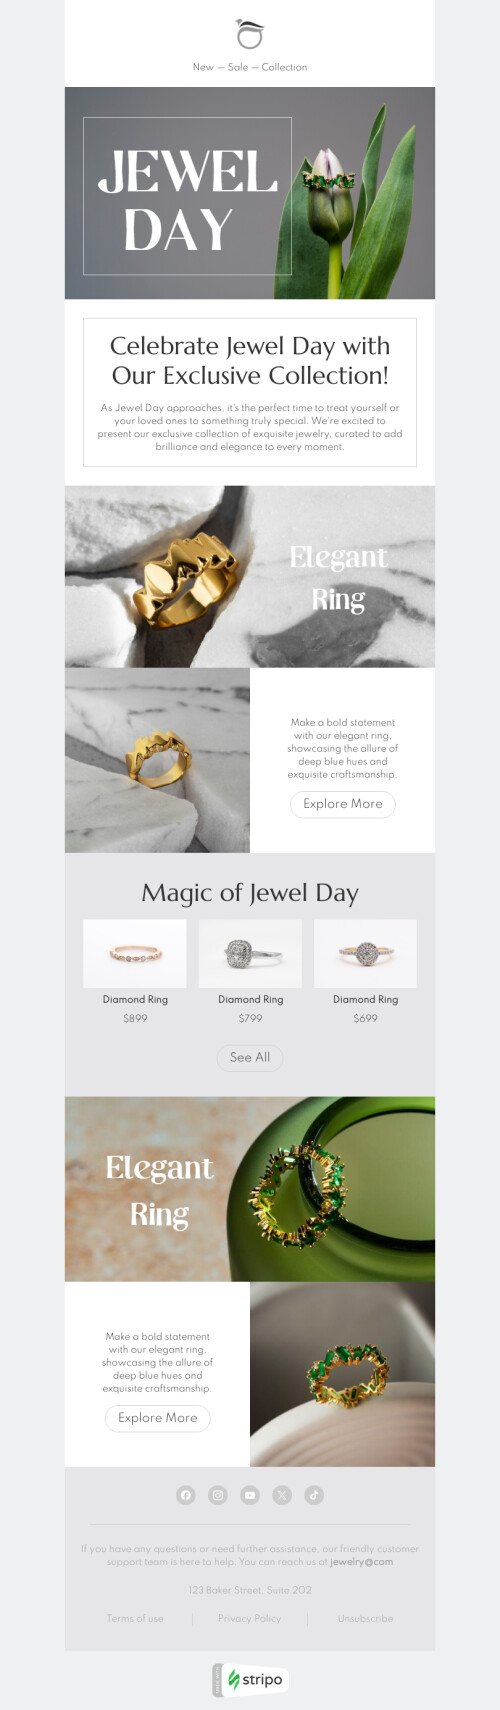 Modelo de e-mail de «Anel elegante» de Dia das joias para a indústria de joalheria Visualização de dispositivo móvel